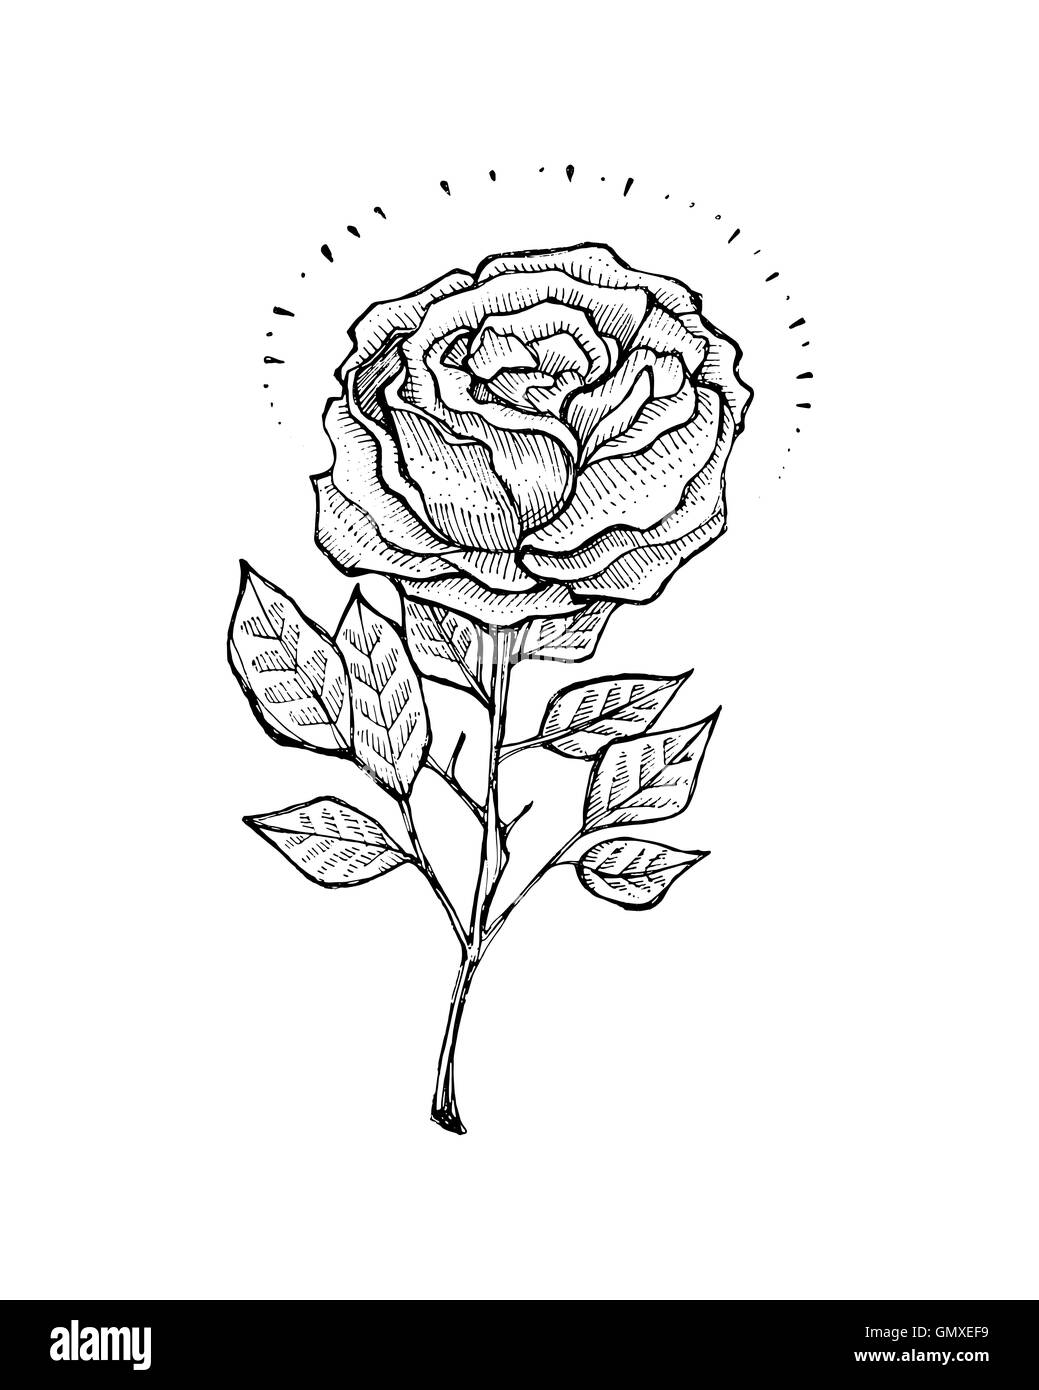 Illustration à la main ou d'un dessin d'une rose dans un style de tatouage Banque D'Images